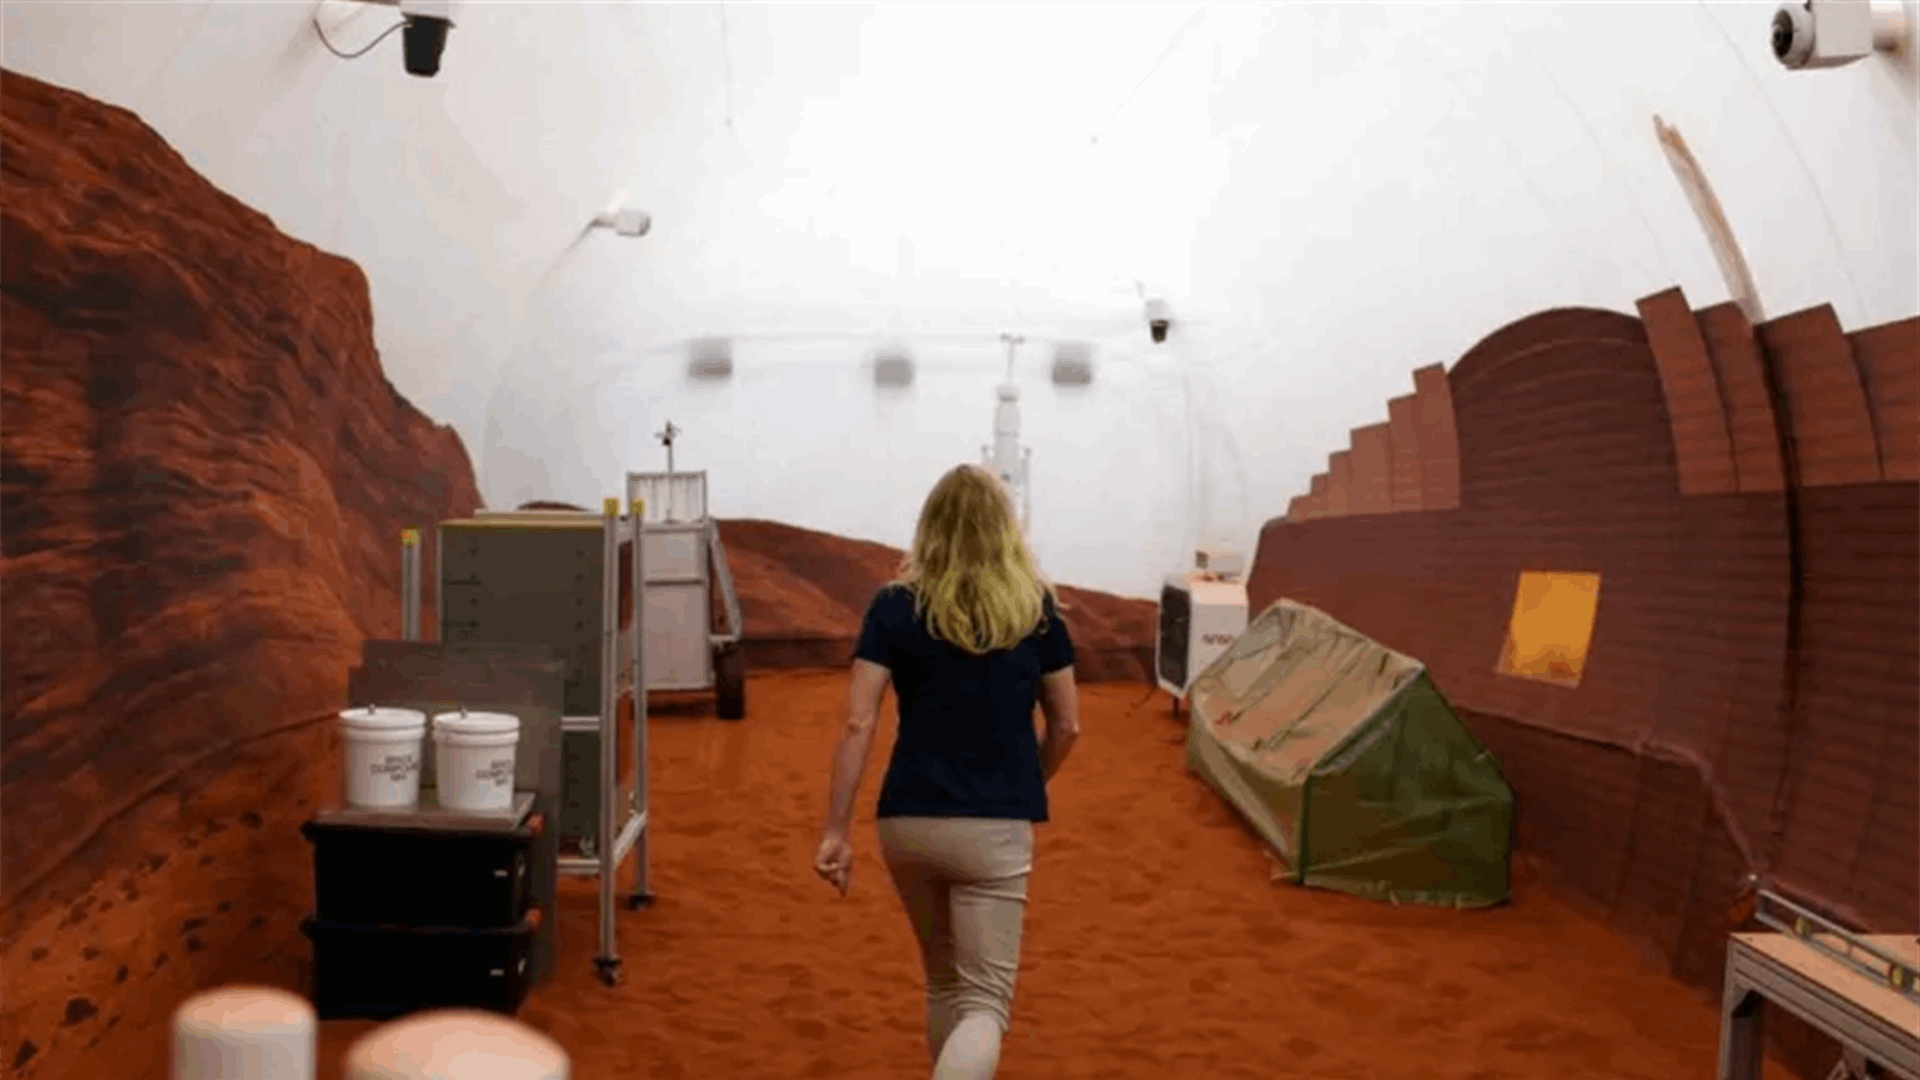 عالمة كندية تتحضر لتجربة الحياة على المريخ... من الأرض! 